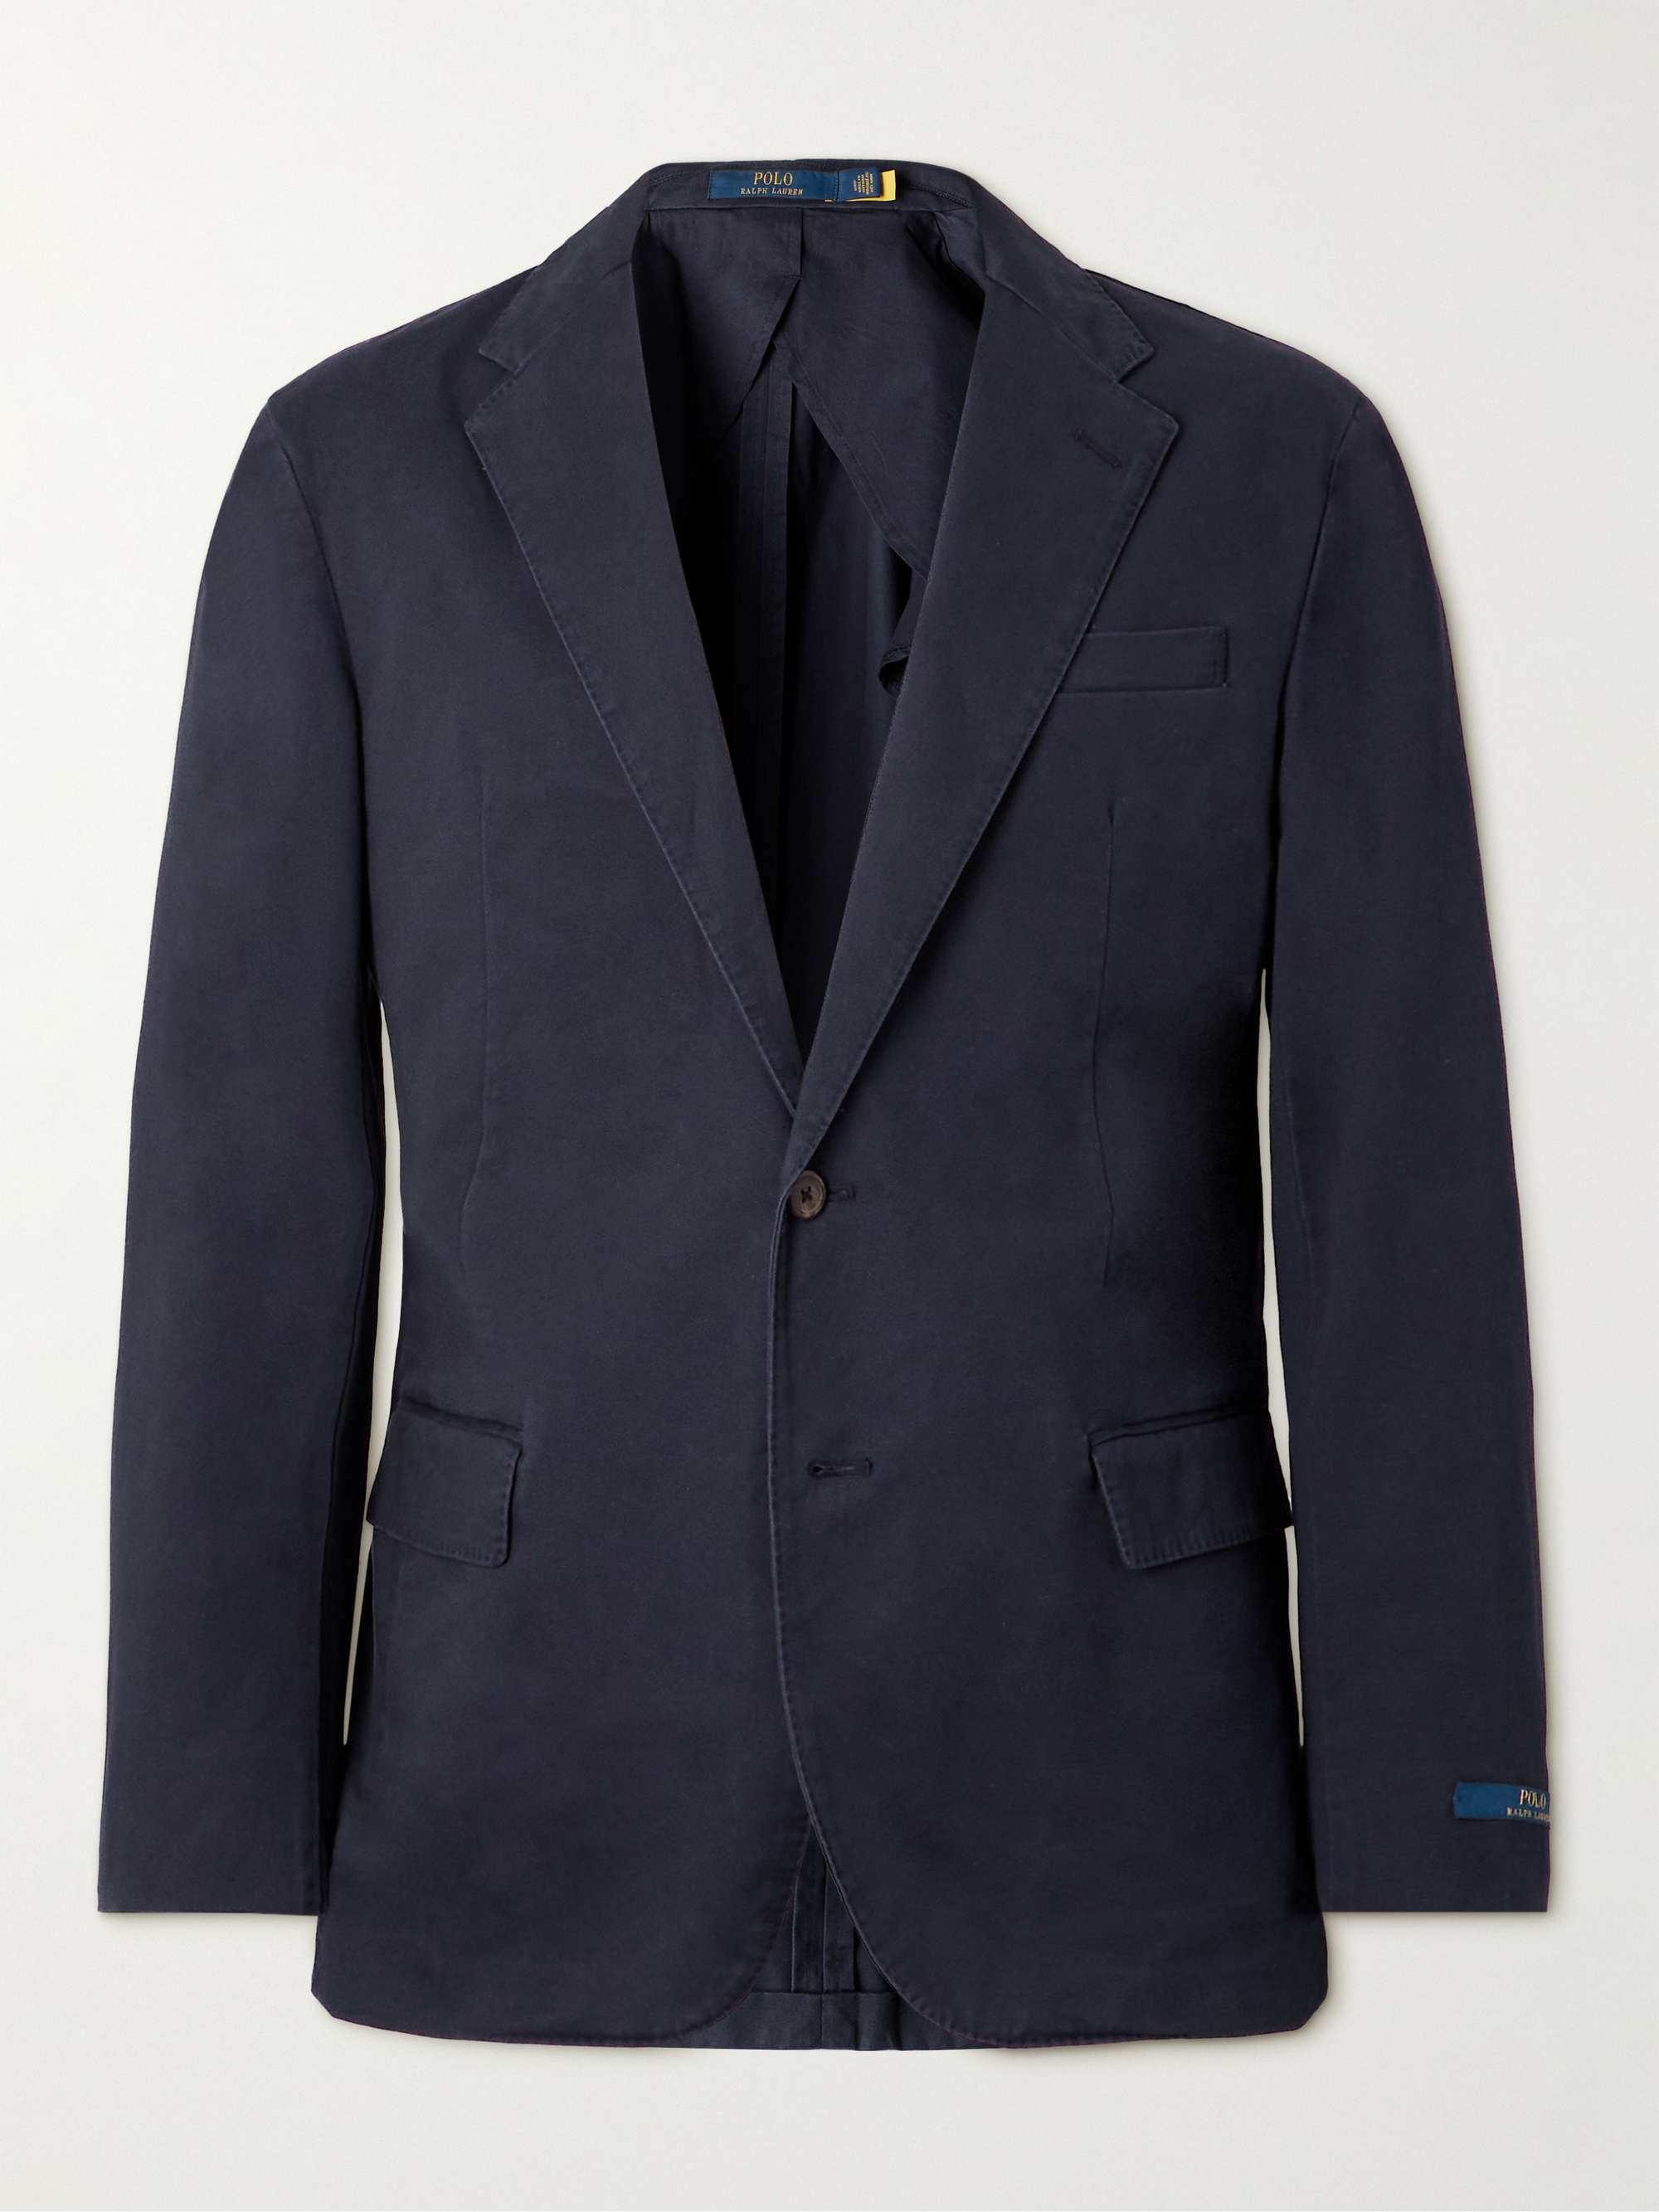 POLO RALPH LAUREN Slim-Fit Cotton-Blend Suit Jacket for Men | MR PORTER